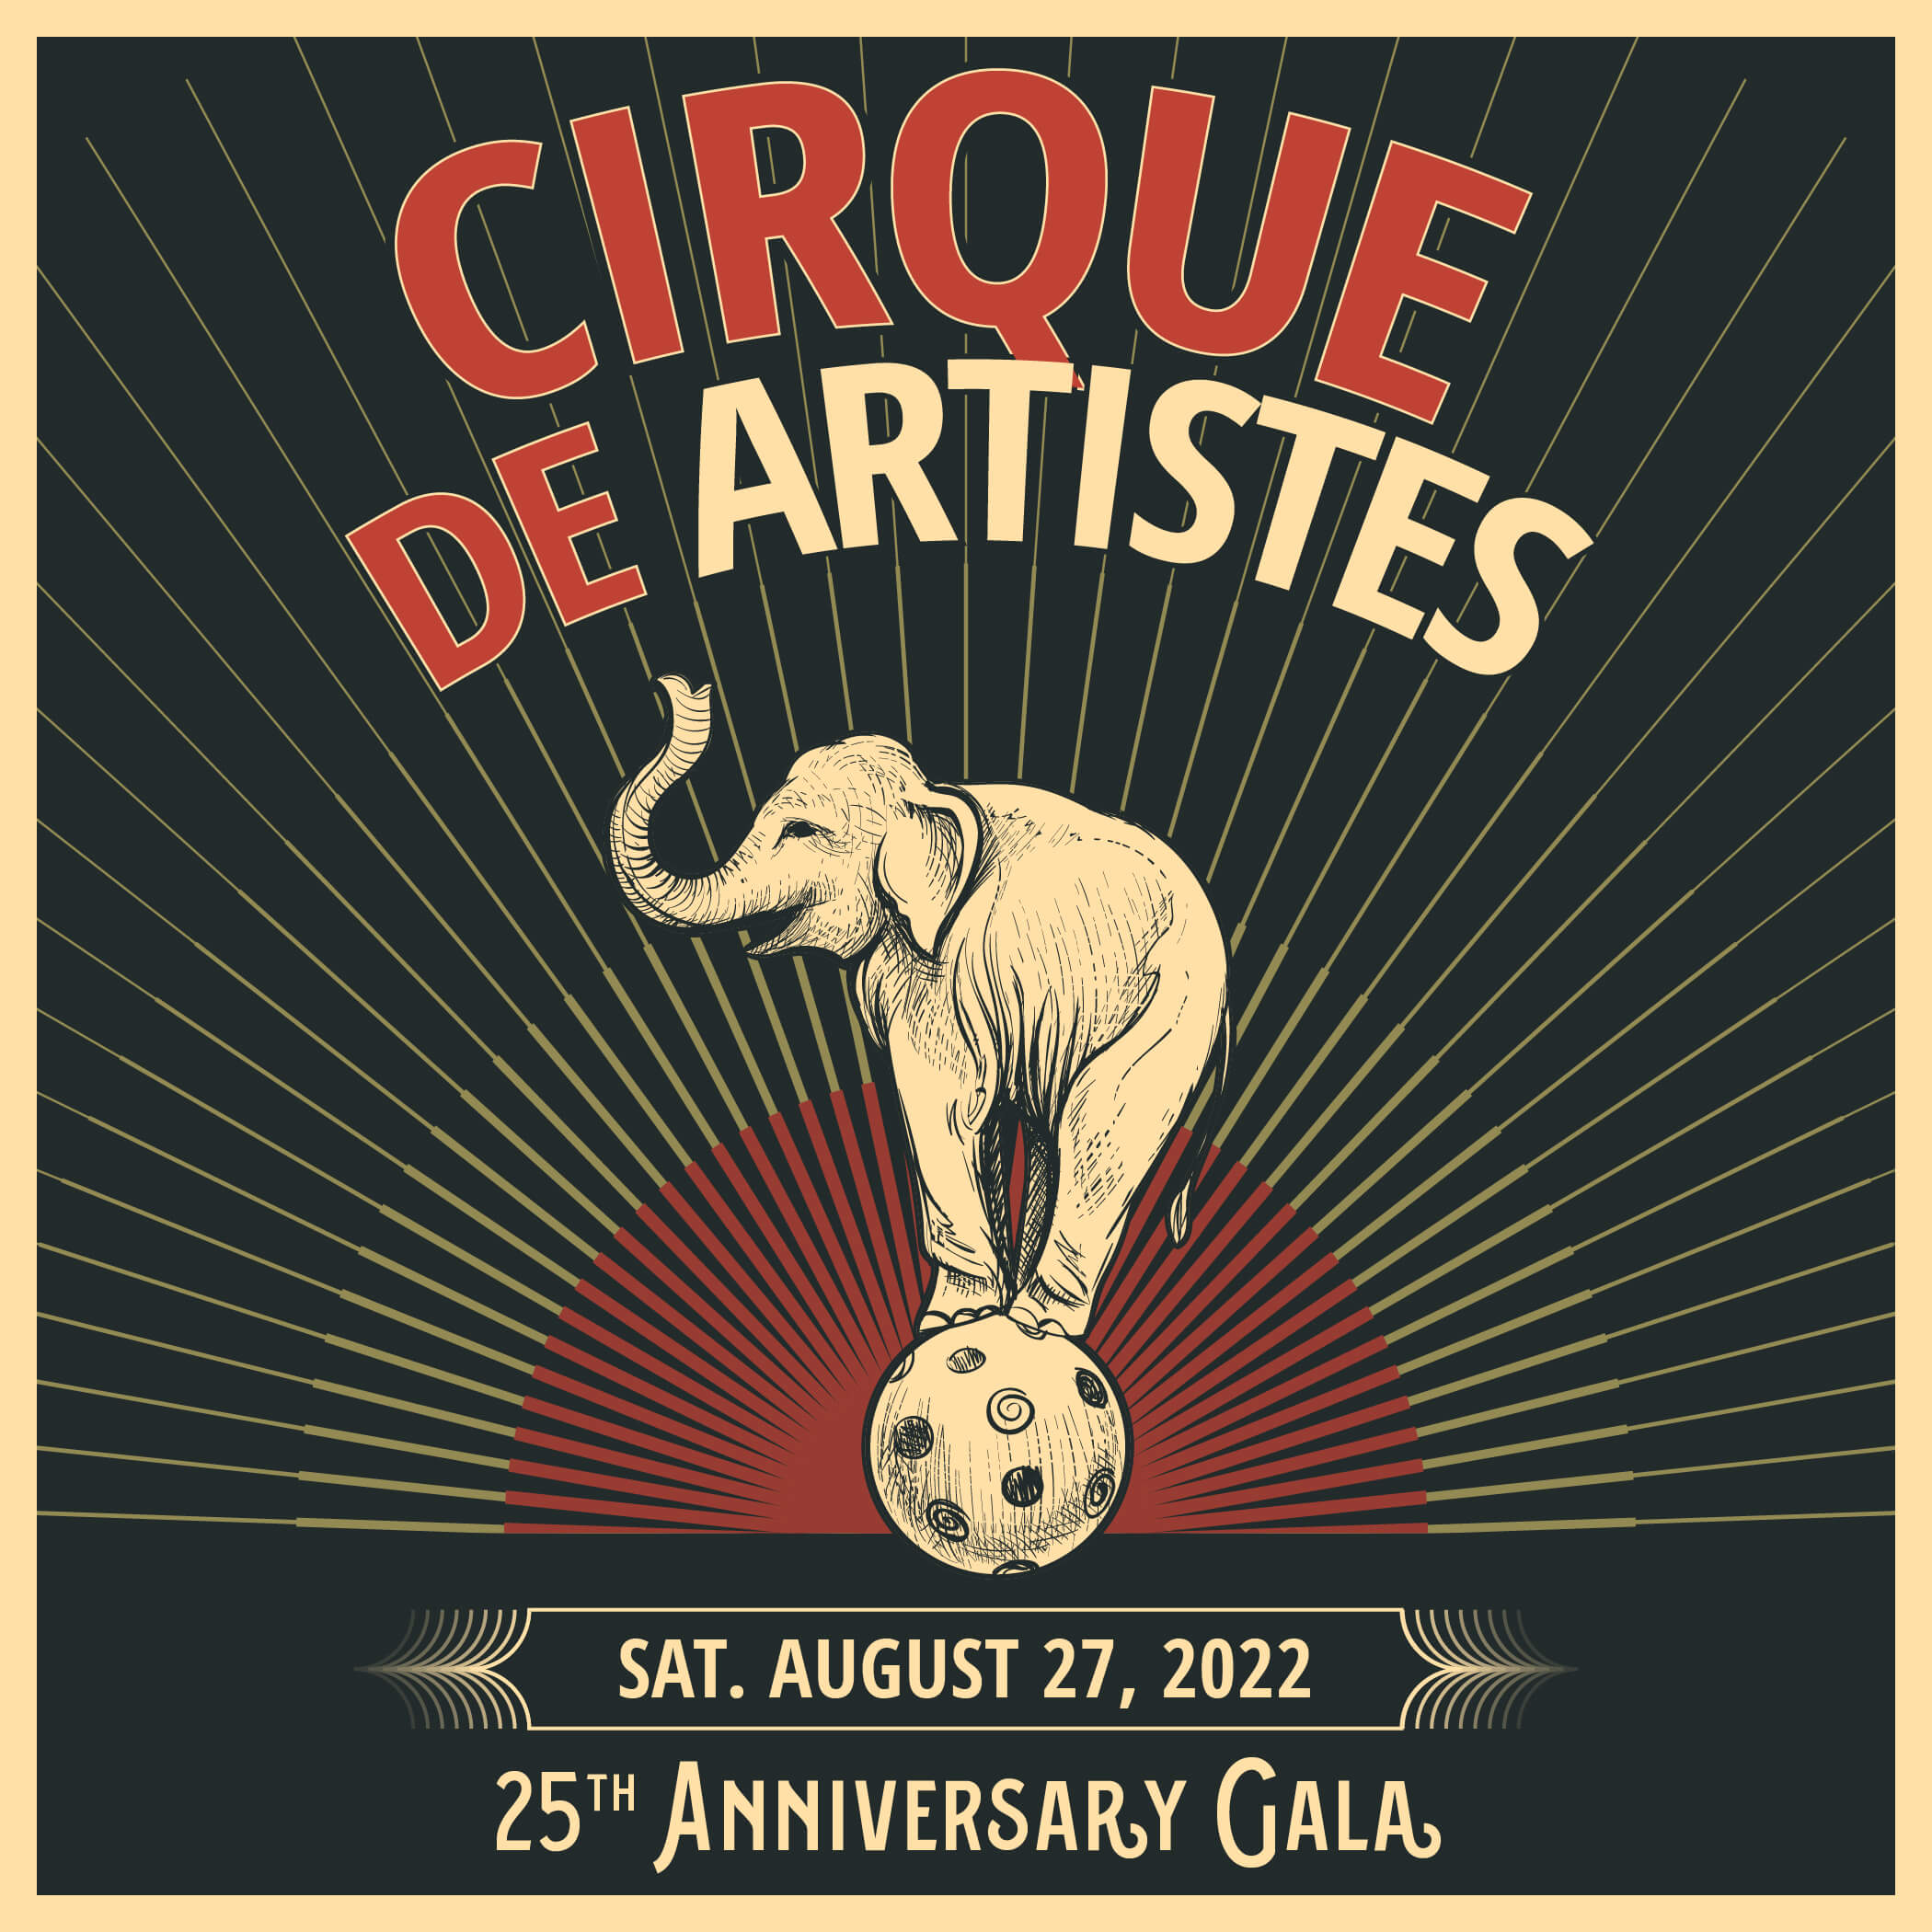 cirque de artistes gala event image